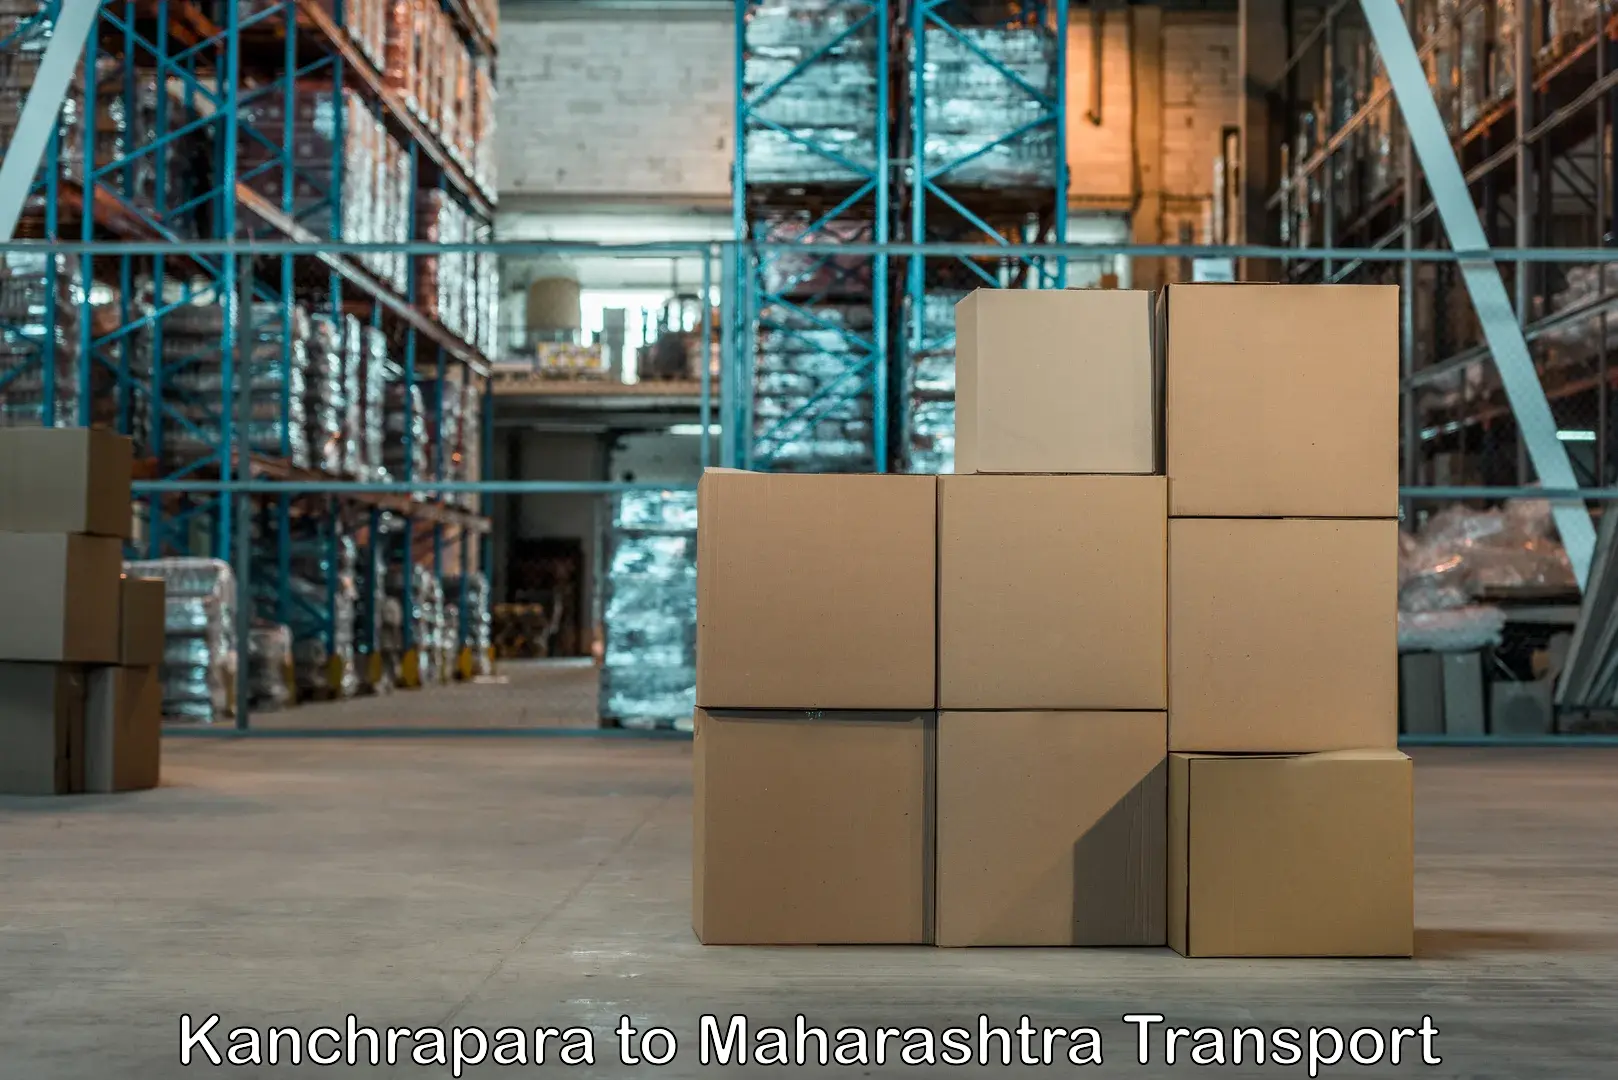 Goods delivery service Kanchrapara to Maharashtra